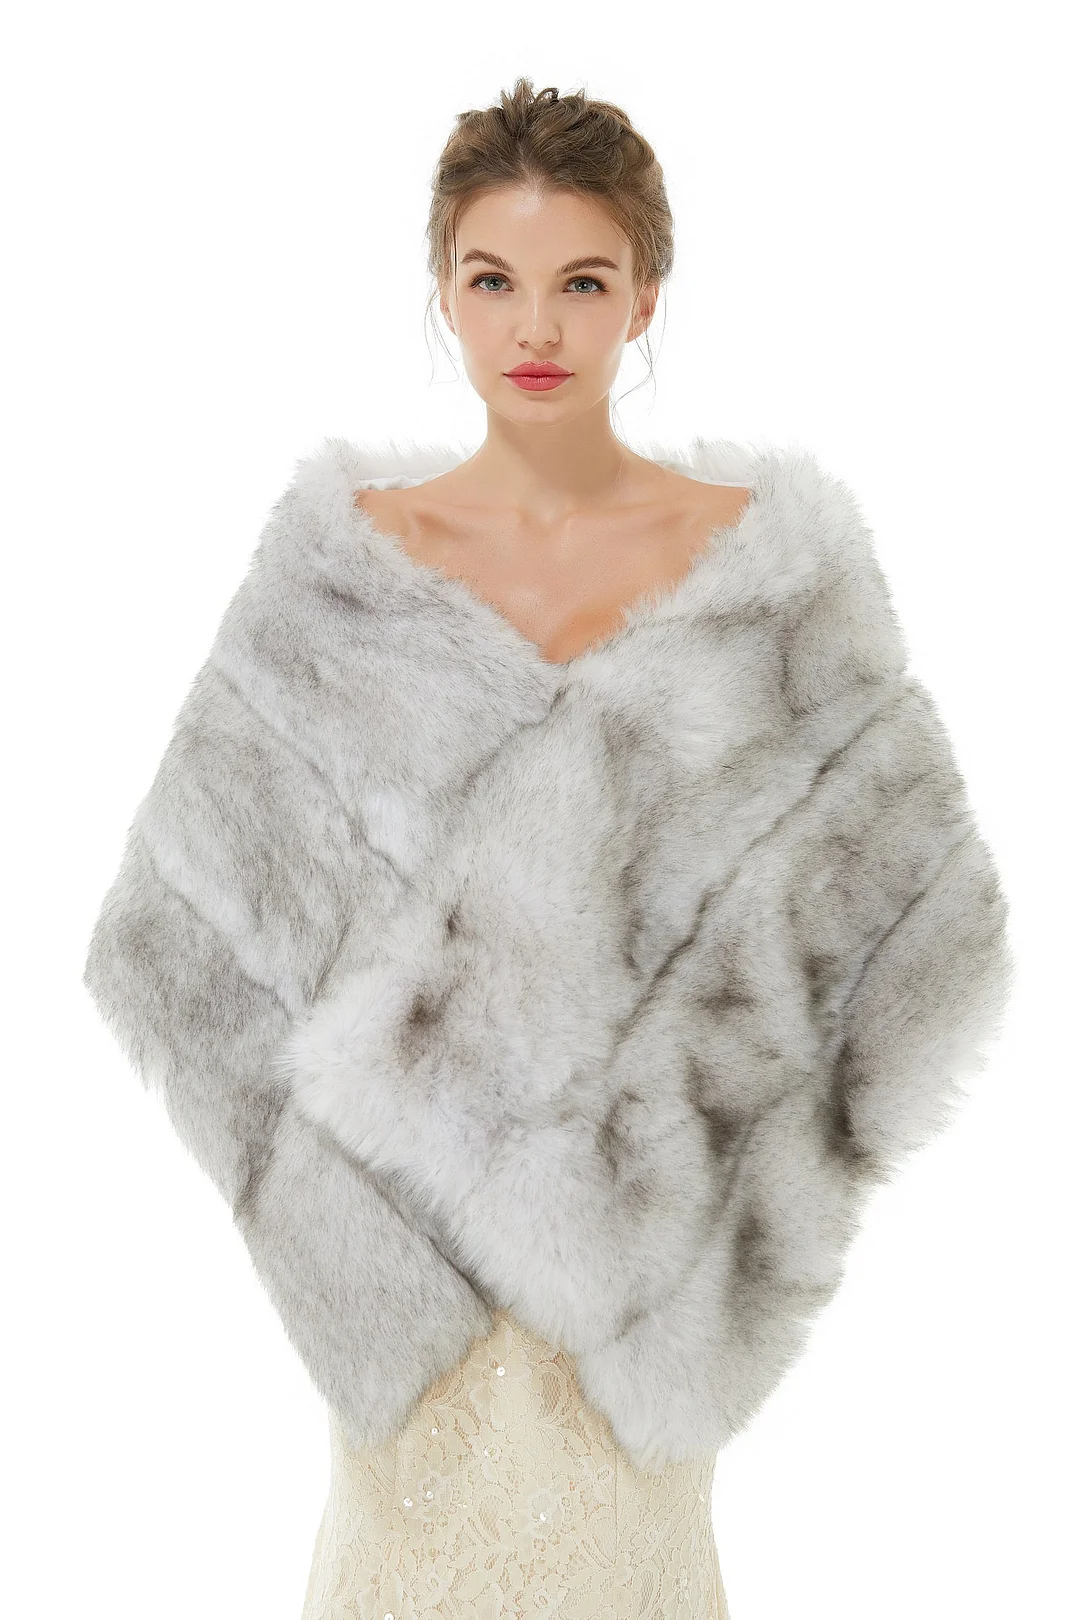 Luluslly New Arrival Light Grey Faux Fur Wedding Wrap